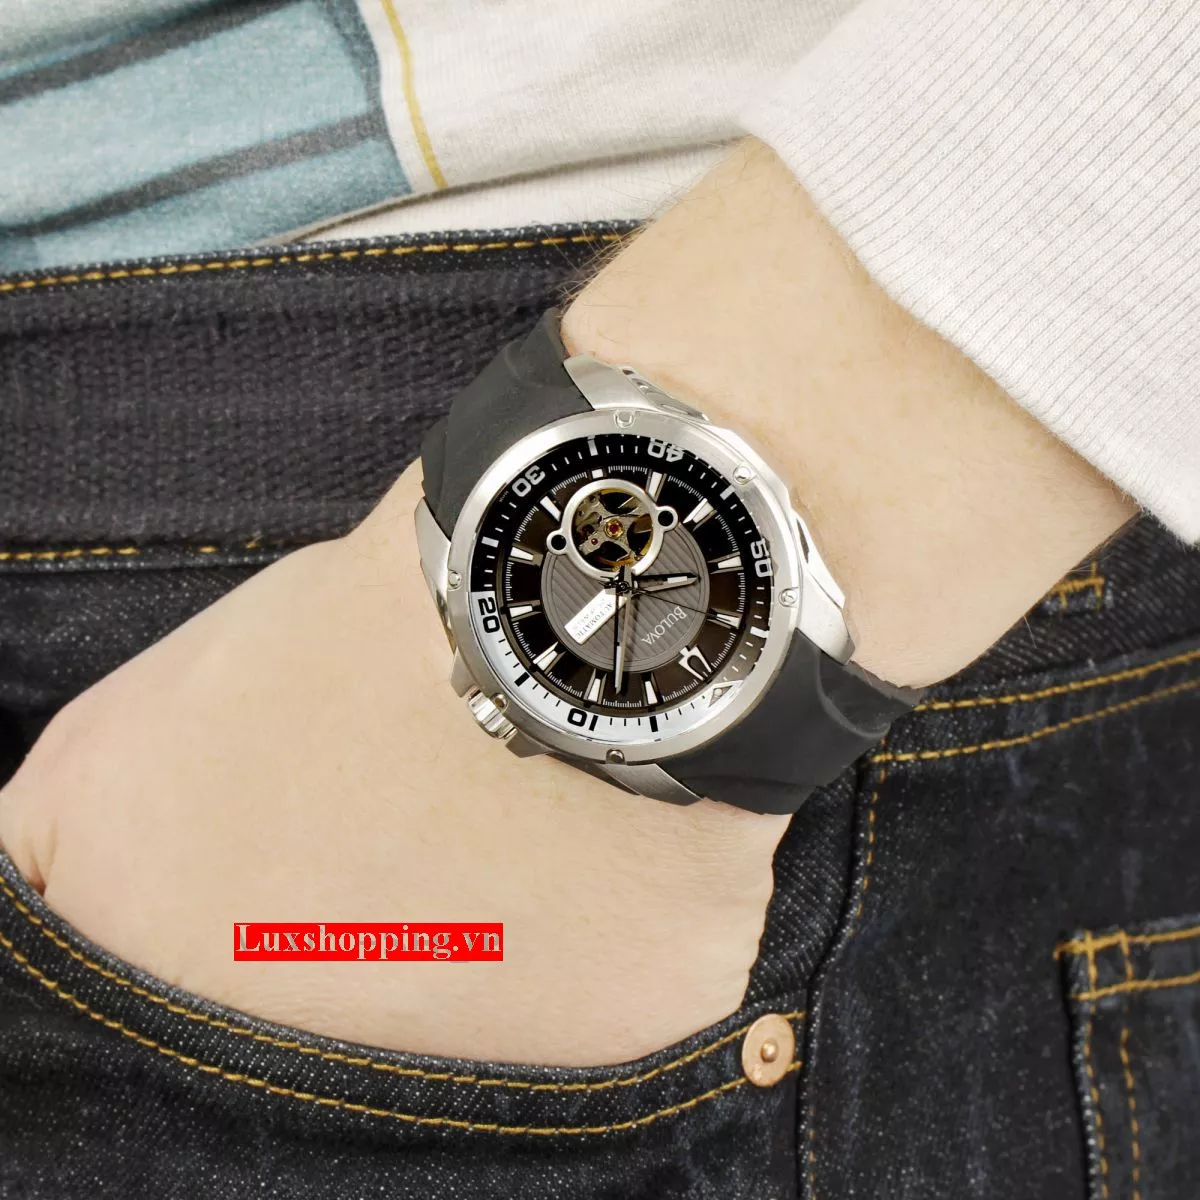 BULOVA Series 120 Mechanical Automatic Watch 46mm